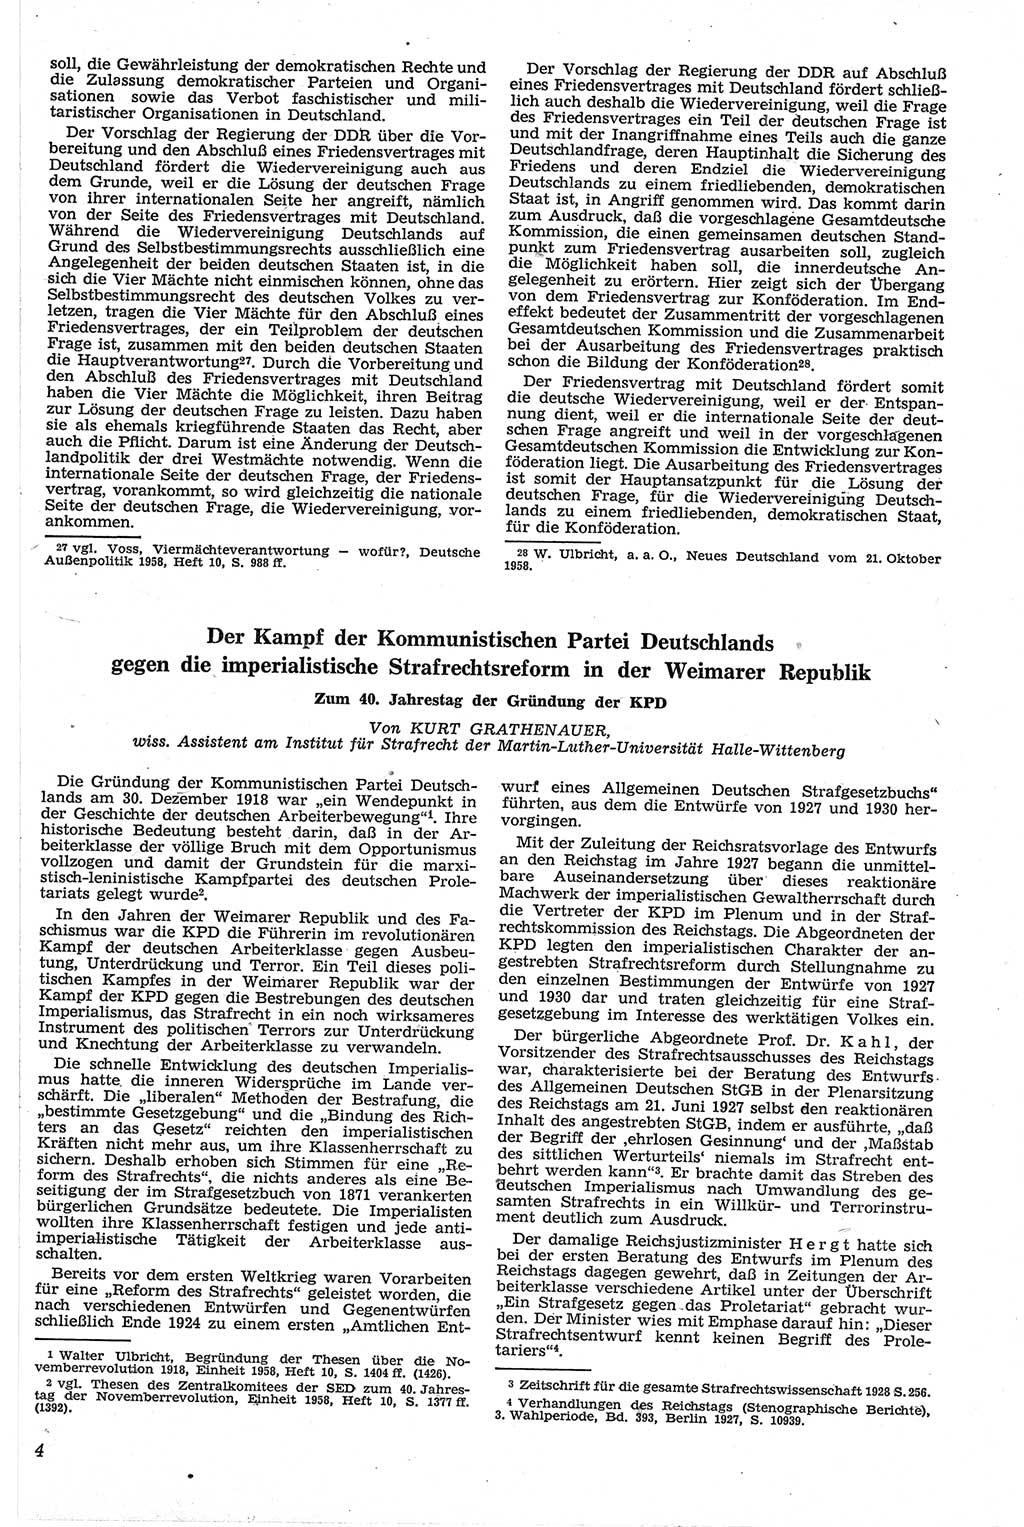 Neue Justiz (NJ), Zeitschrift für Recht und Rechtswissenschaft [Deutsche Demokratische Republik (DDR)], 13. Jahrgang 1959, Seite 3 (NJ DDR 1959, S. 3)